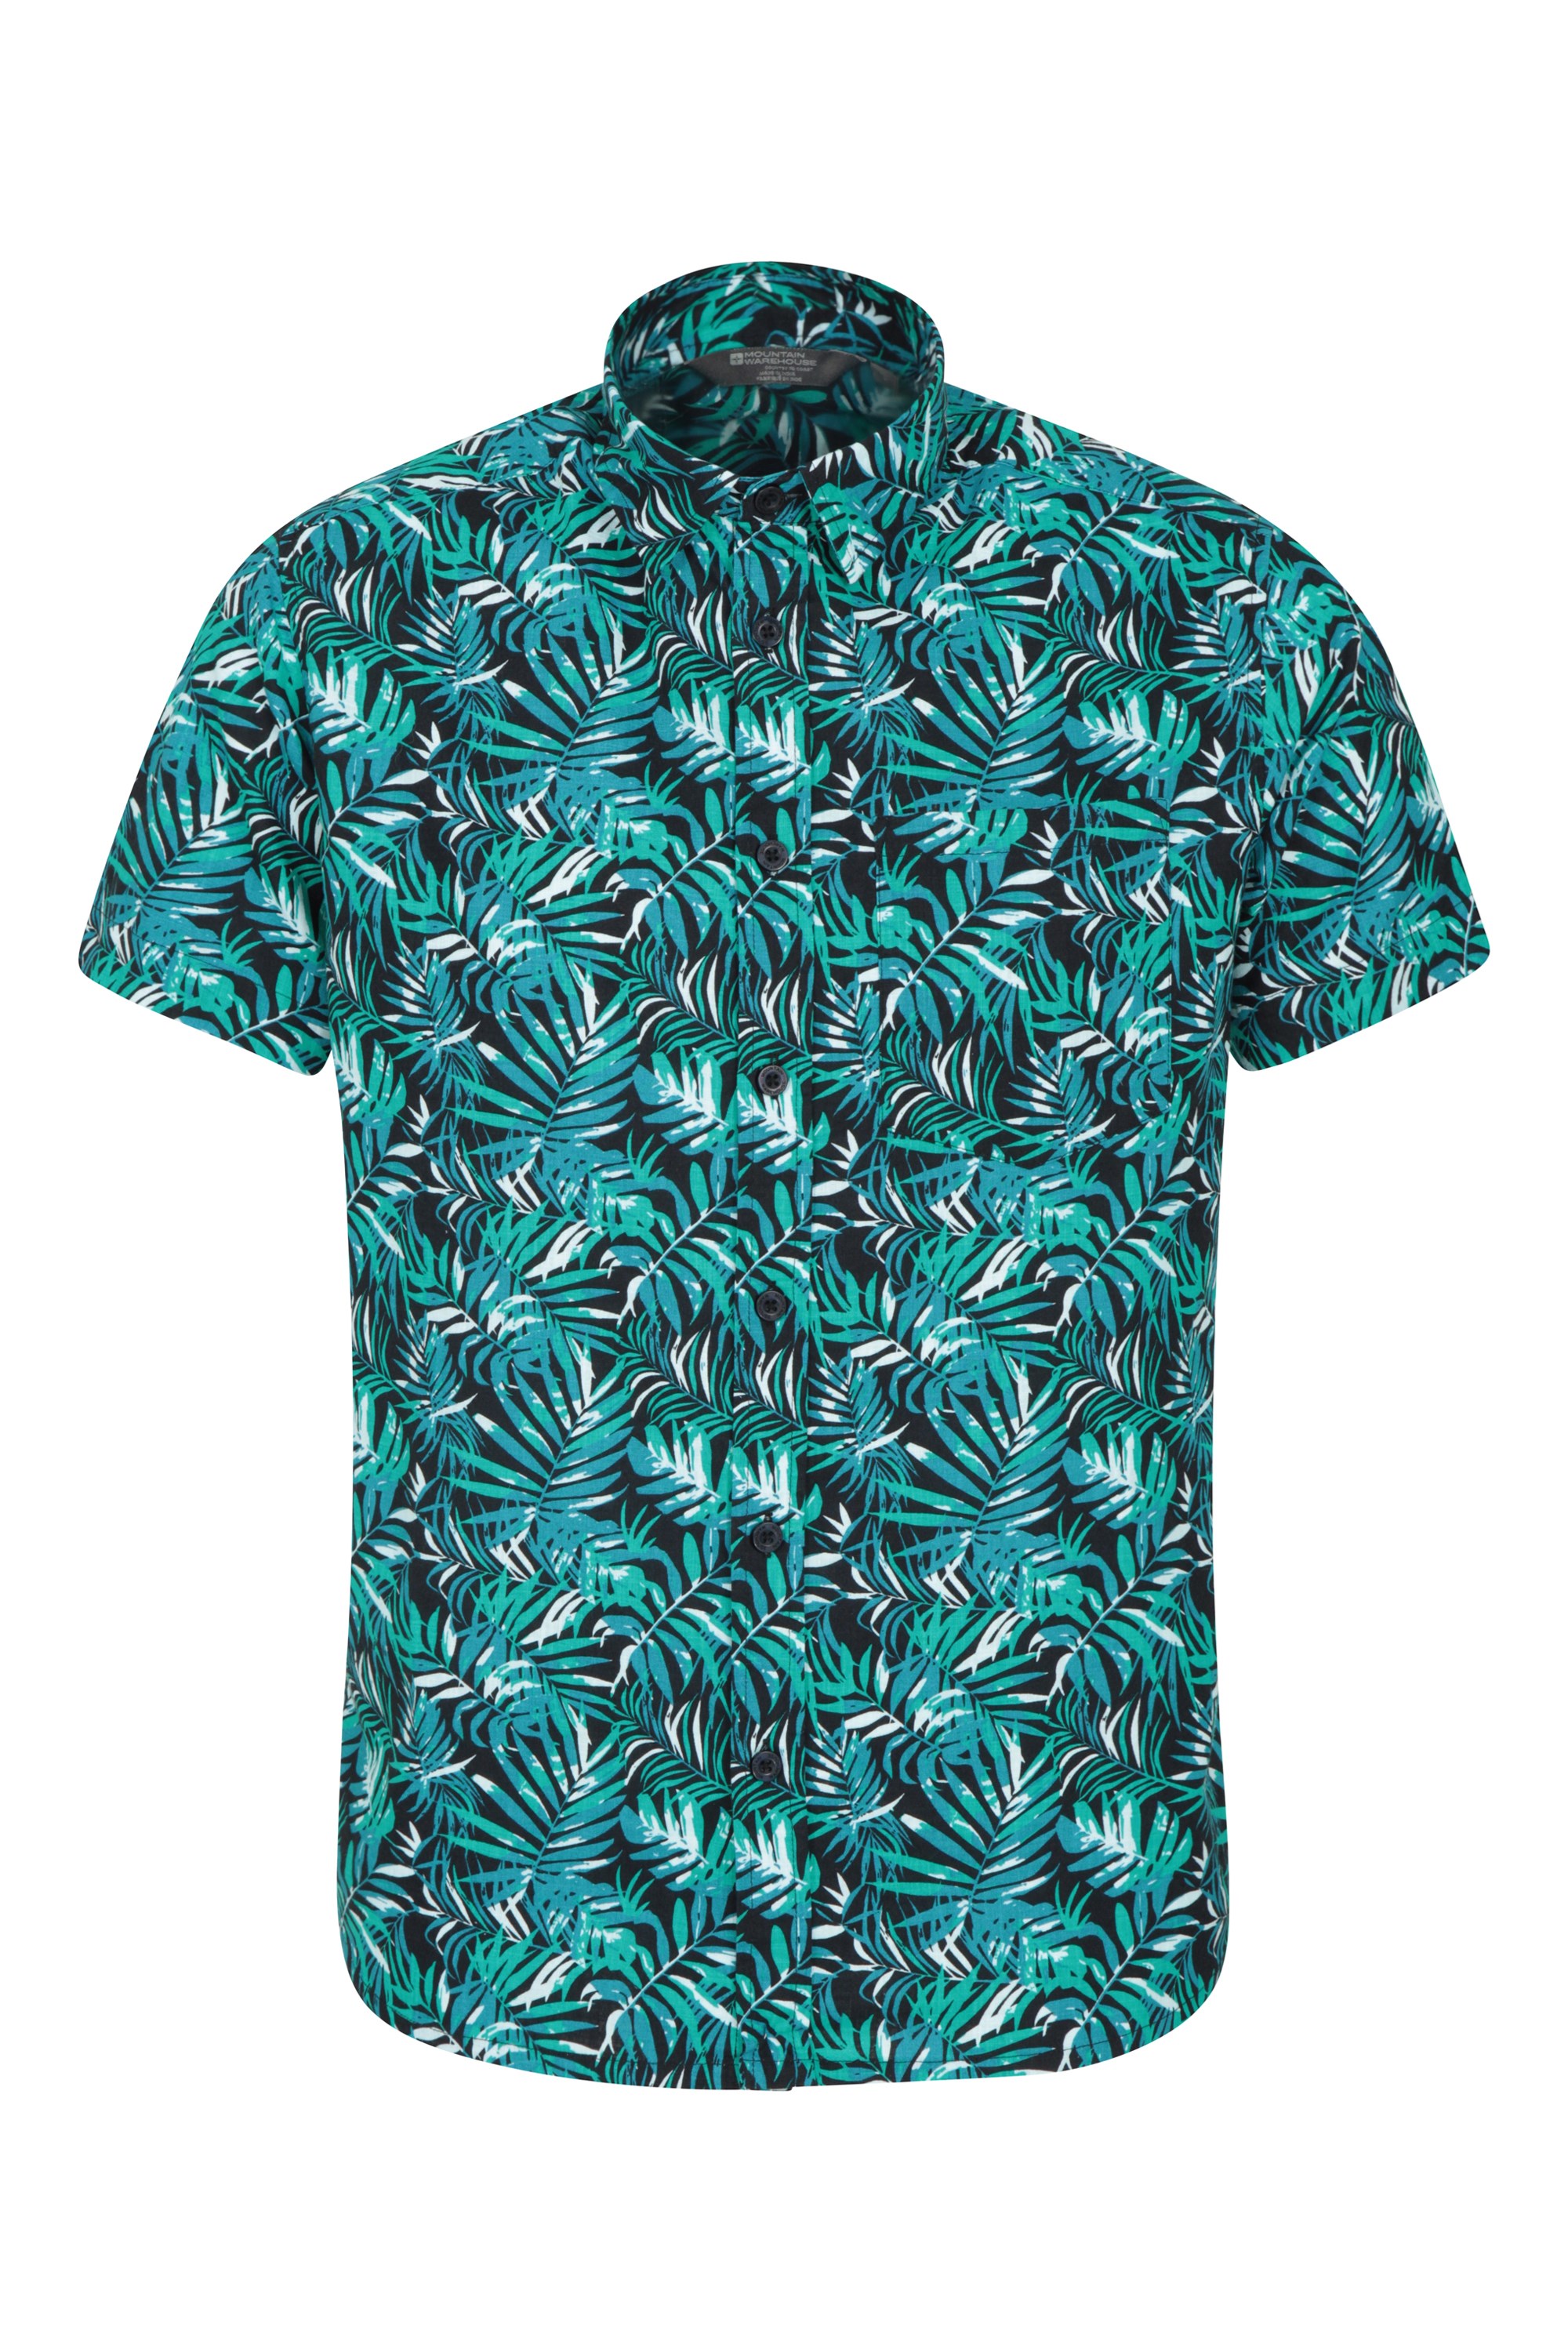 Chemise à manches courtes hommes Tropical - Bleu